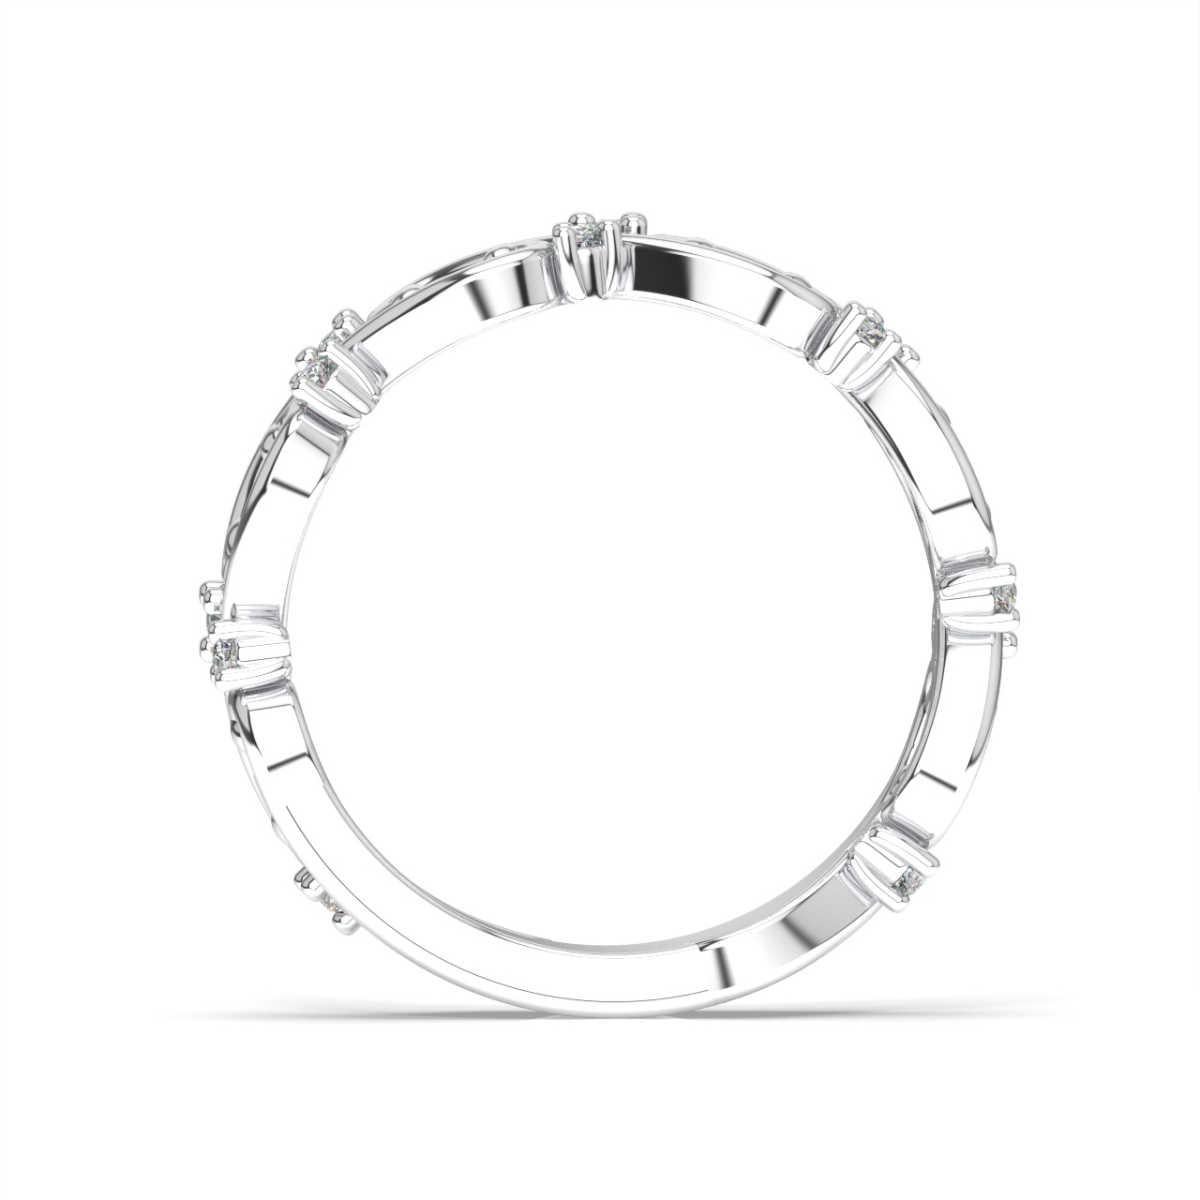 Cet anneau présente des brins de métal précieux délicat entrelacés entre des diamants ronds brillants. Découvrez la différence !

Détails du produit : 

Couleur de la pierre centrale : BLANC
Type de pierre latérale : DIAMANT NATUREL
Forme de la